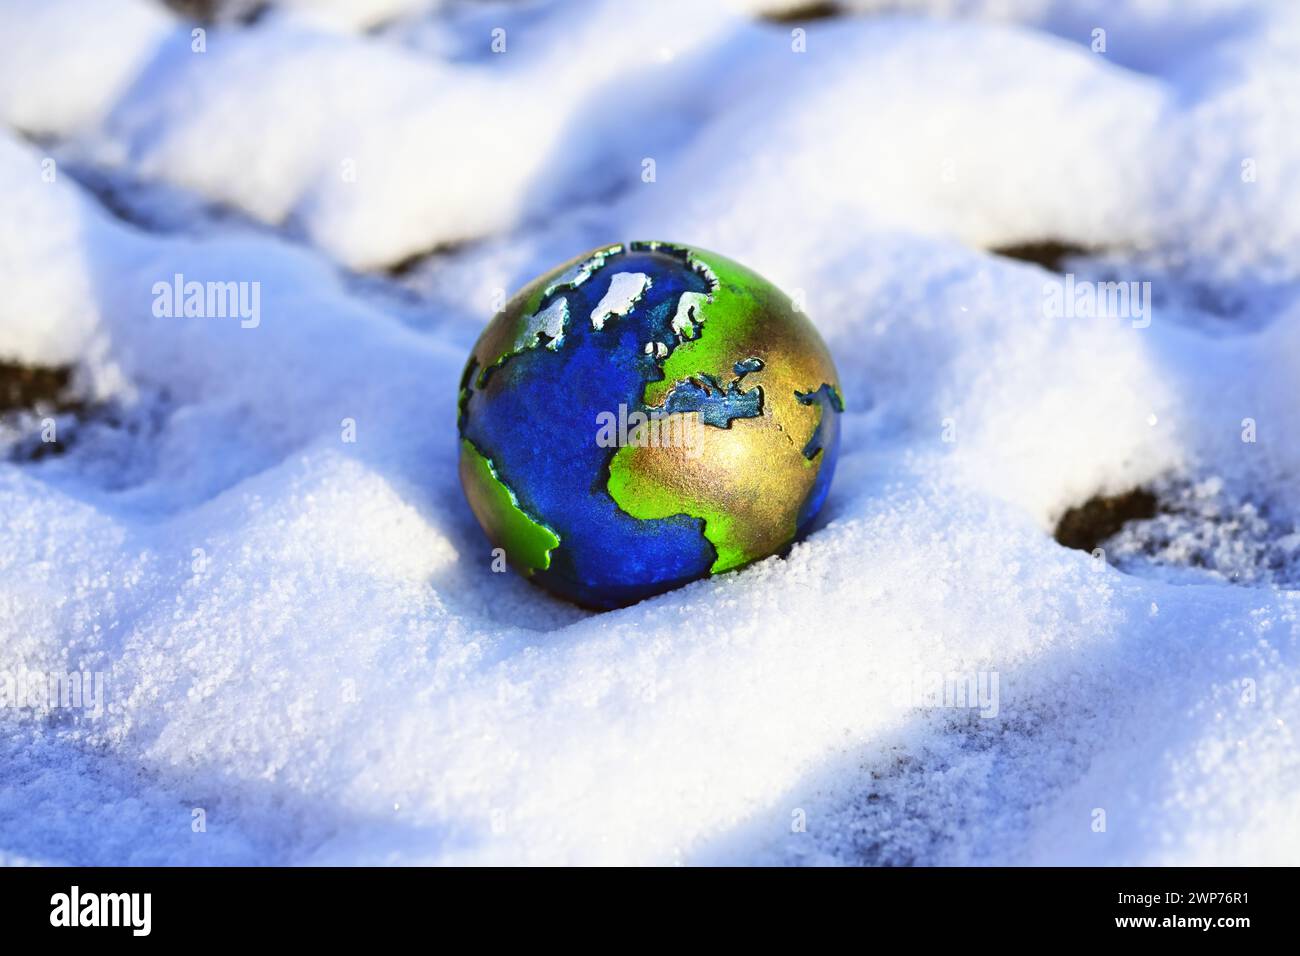 Erdkugel im Schnee, Symbolfoto Kältewelle und Wetterextreme Banque D'Images